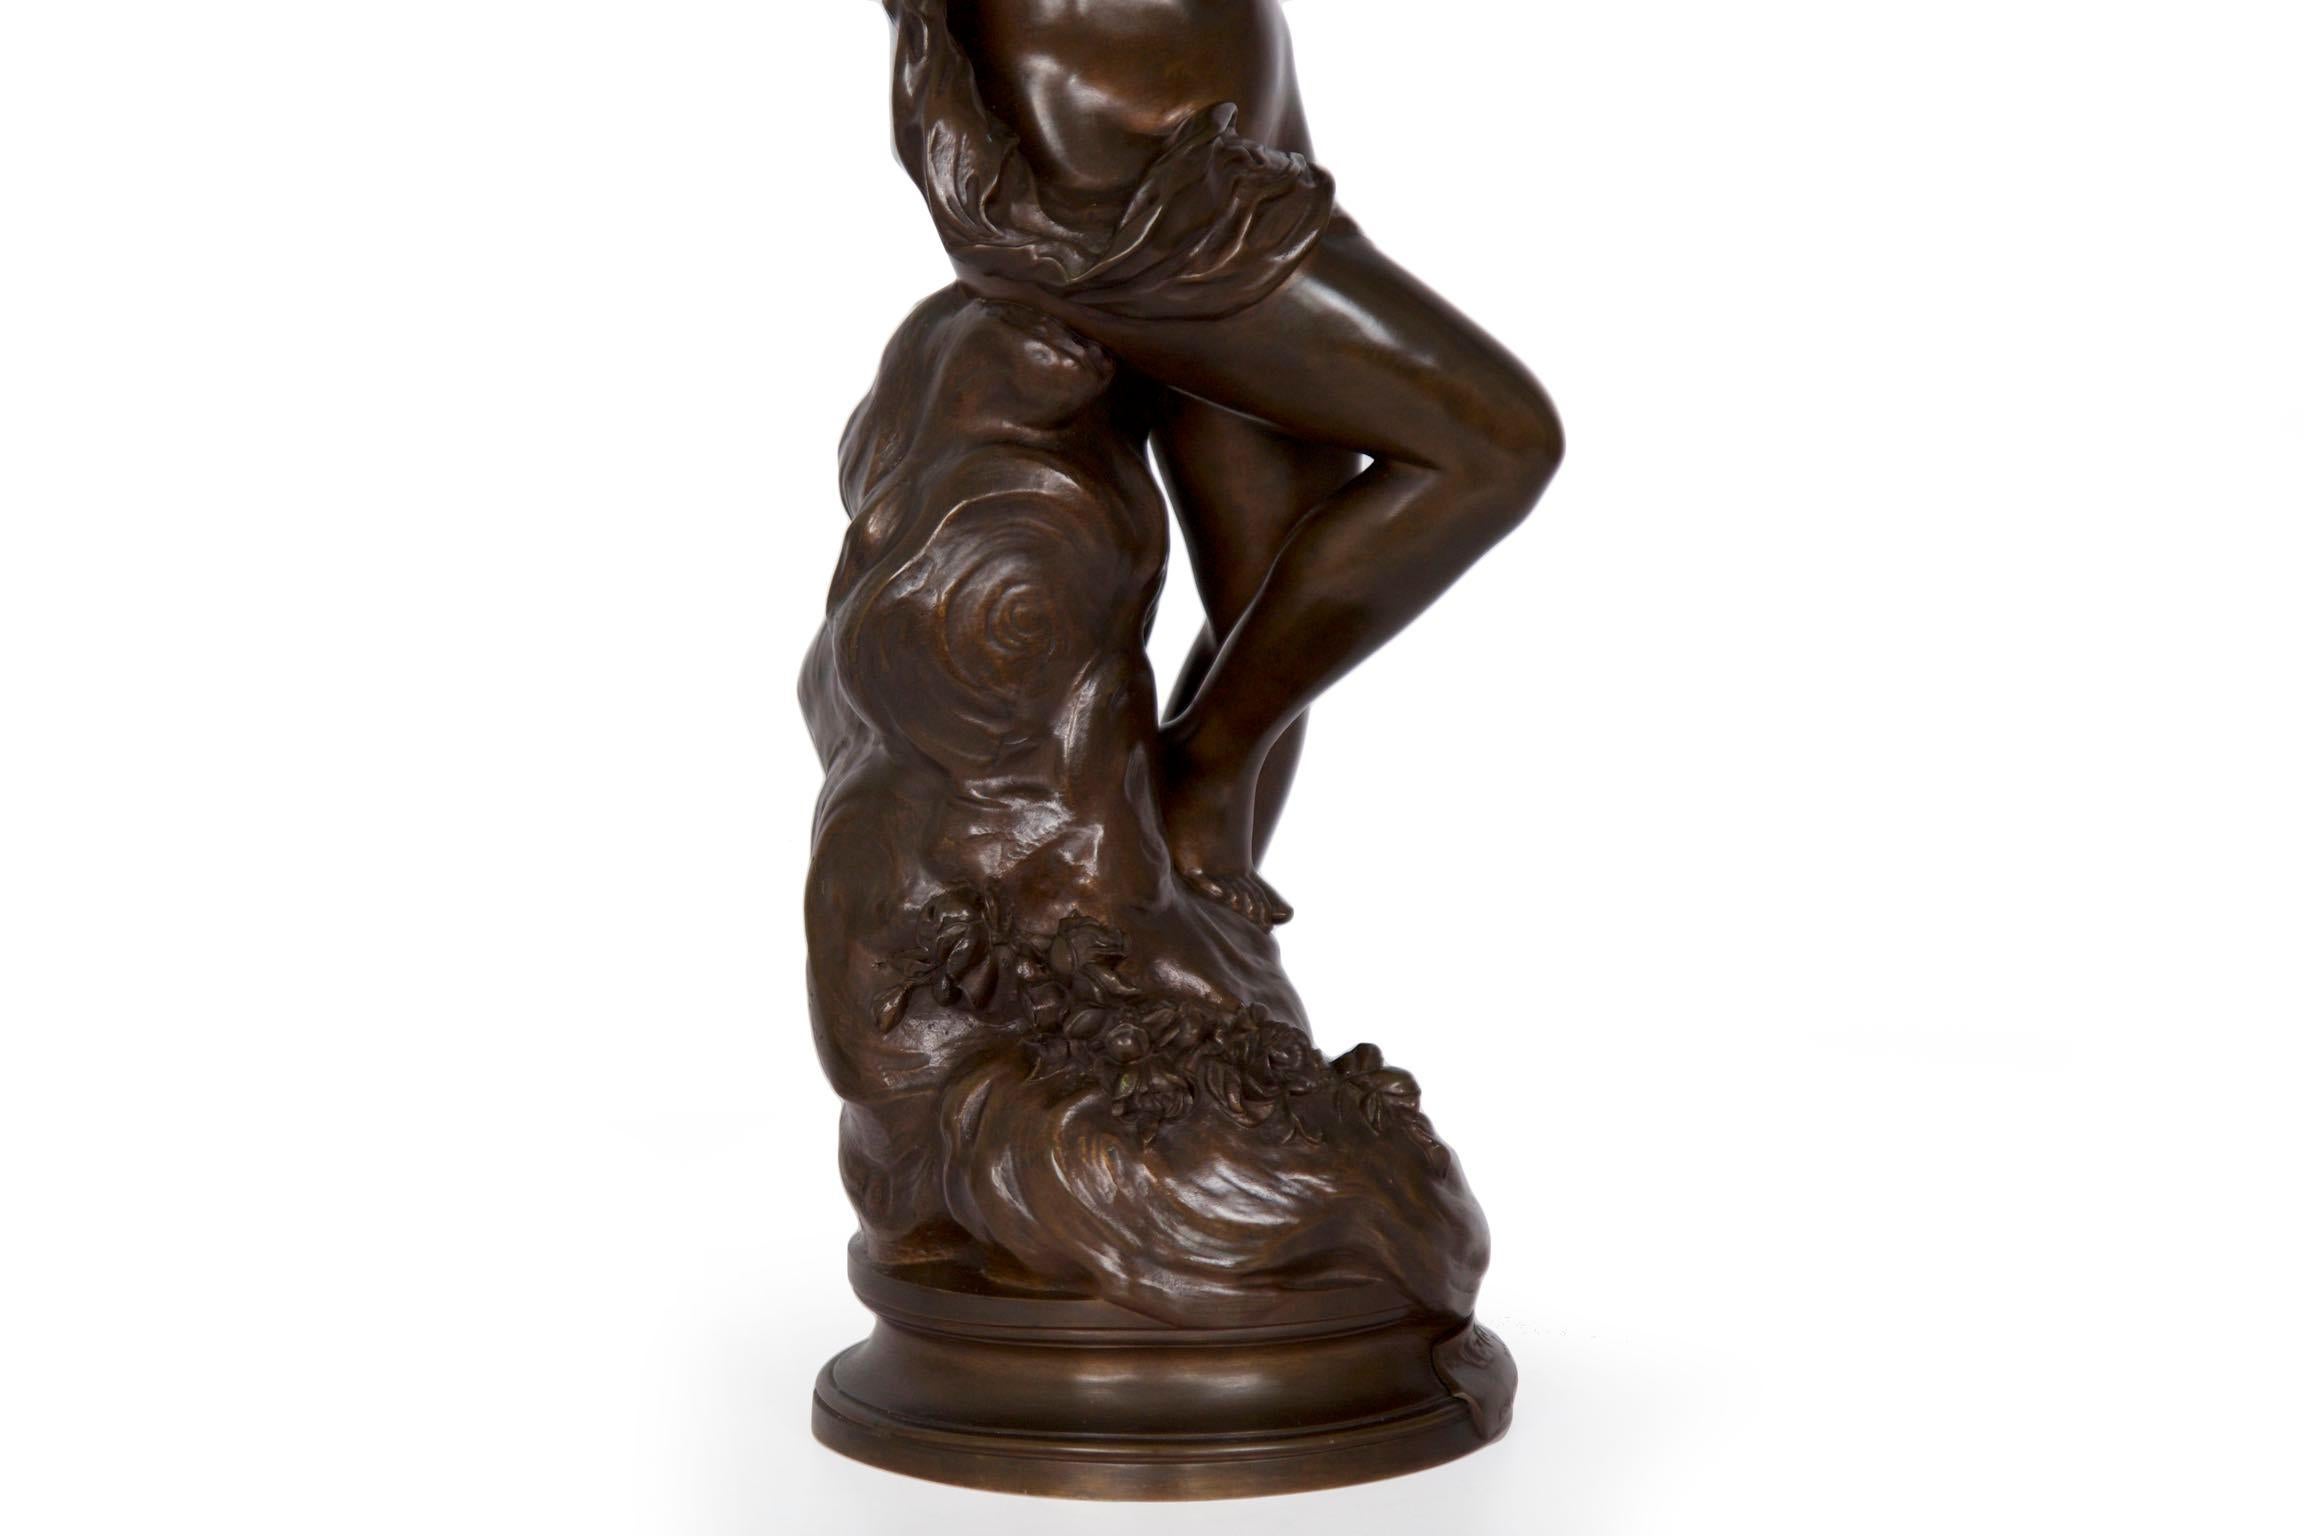 Antique Art Nouveau French Bronze Sculpture of “The Dream” by Lucien Pallez 15